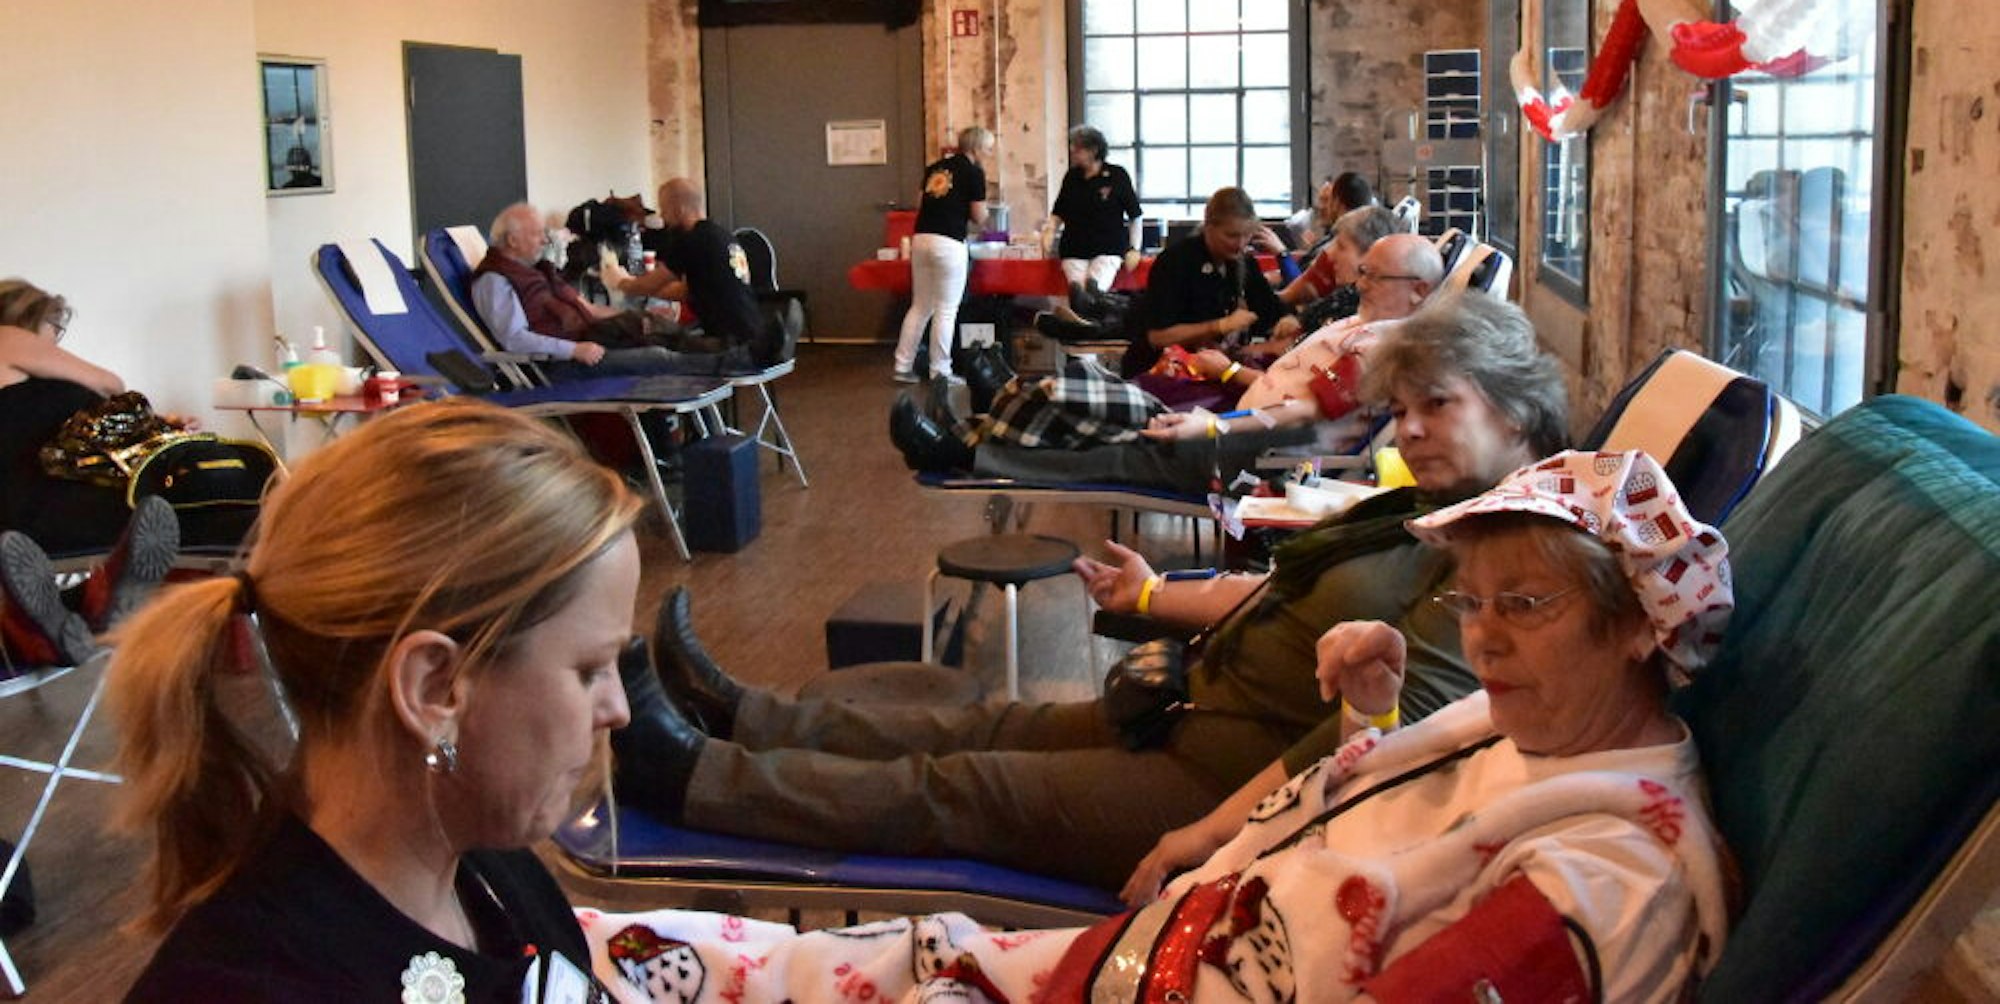 210 Spenderinnen und Spender kamen im Februar 2020 zur „Närrischen Blutspende“ in die Halle Kabelmetal.